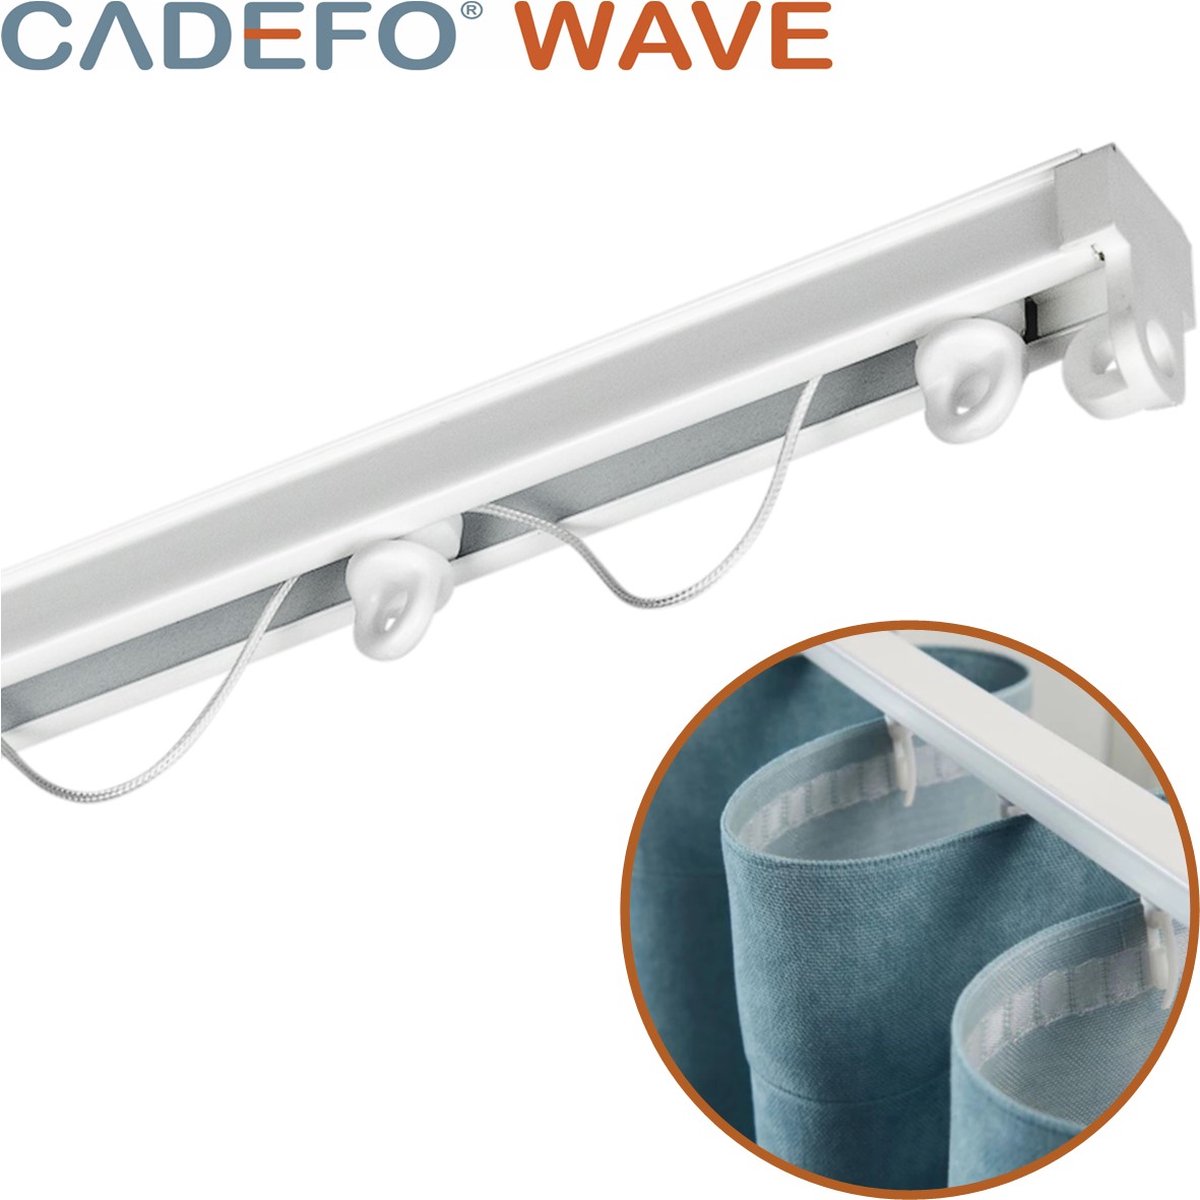 CADEFO WAVE (501 - 550 cm) Gordijnrails - Compleet op maat! - UIT 1 STUK - Leverbaar tot 6 meter - Plafondbevestiging - Lengte 527 cm